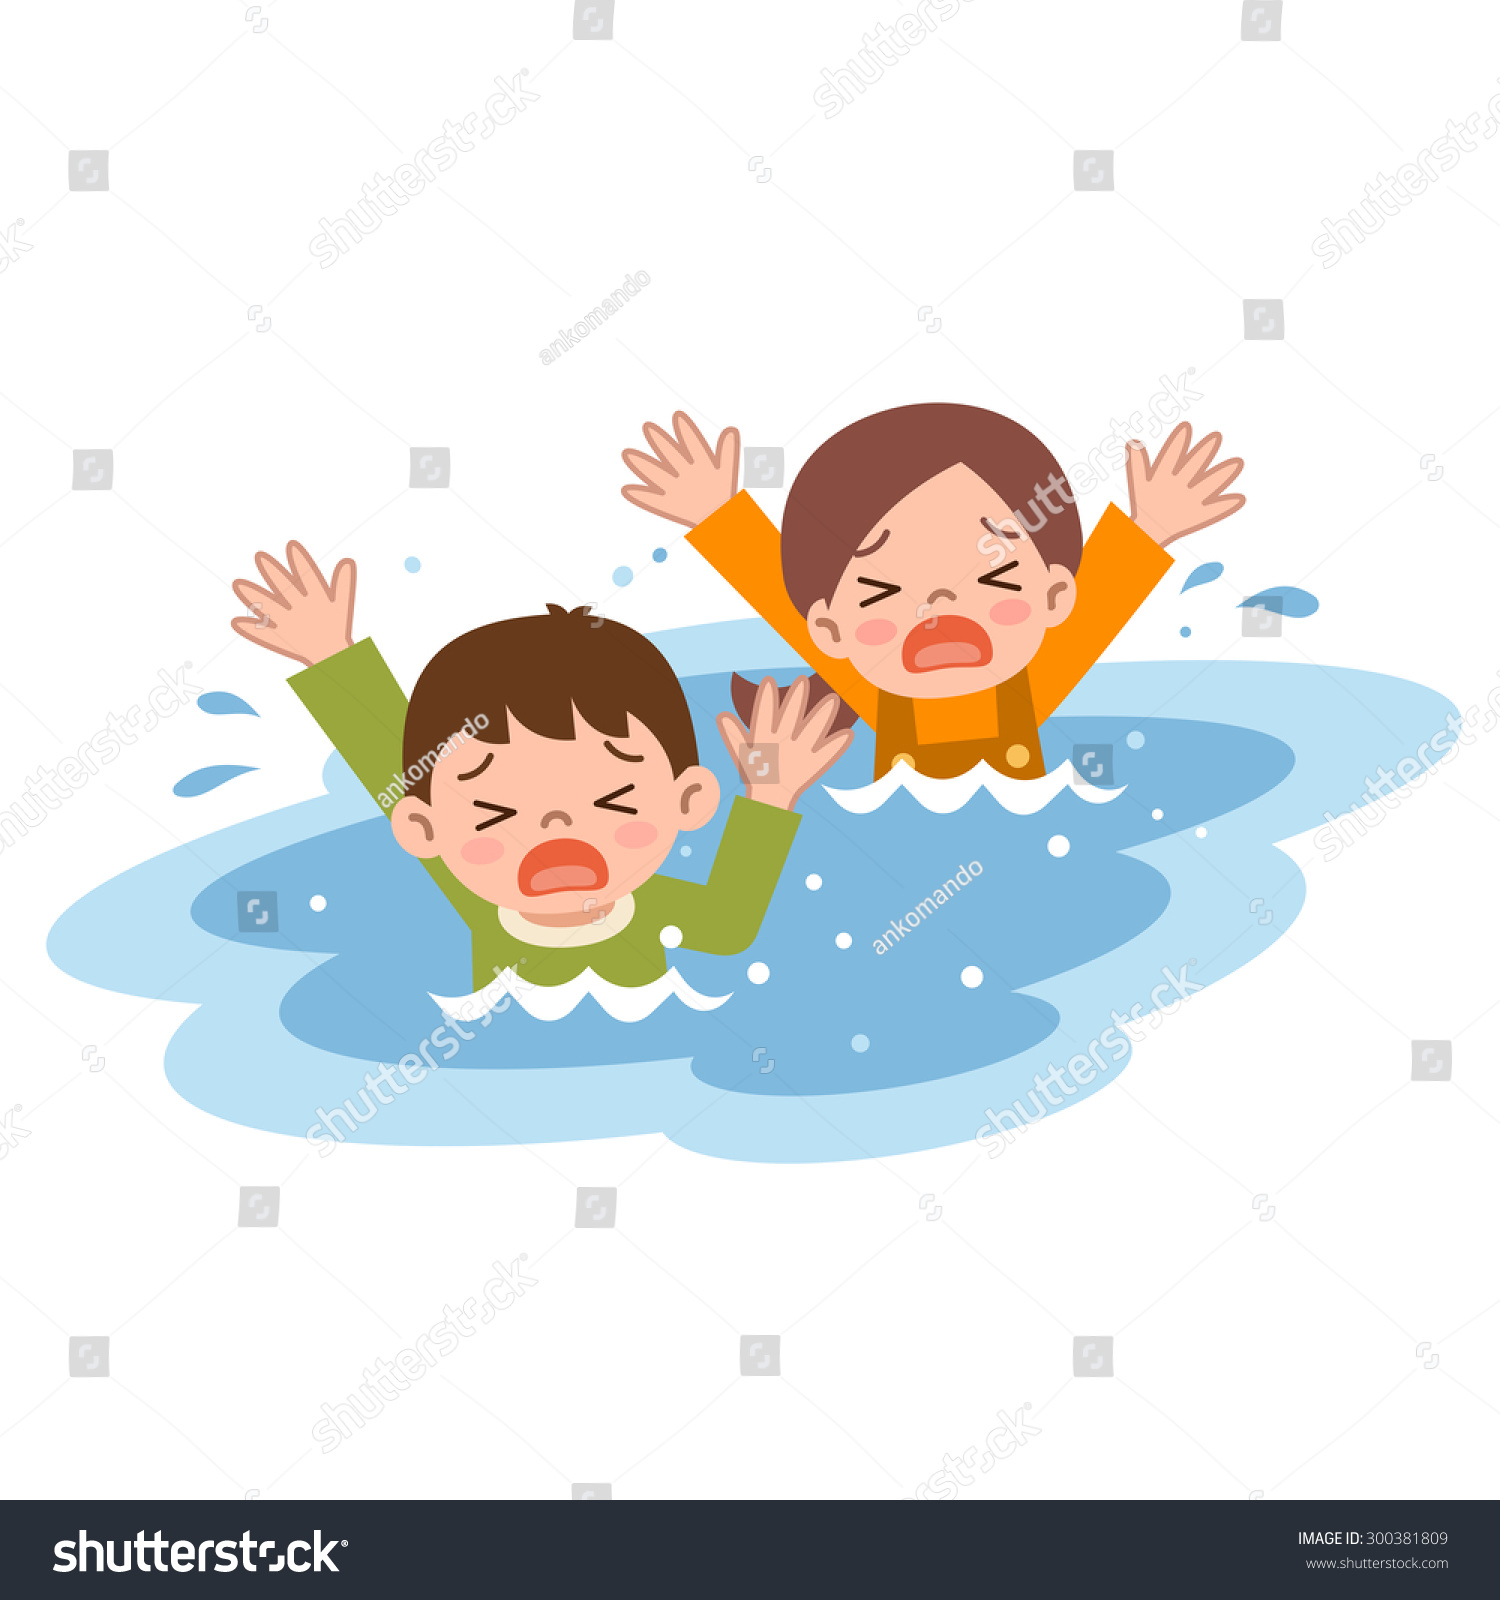 Children Drown Stock Vector Illustration 300381809 : Shutterstock